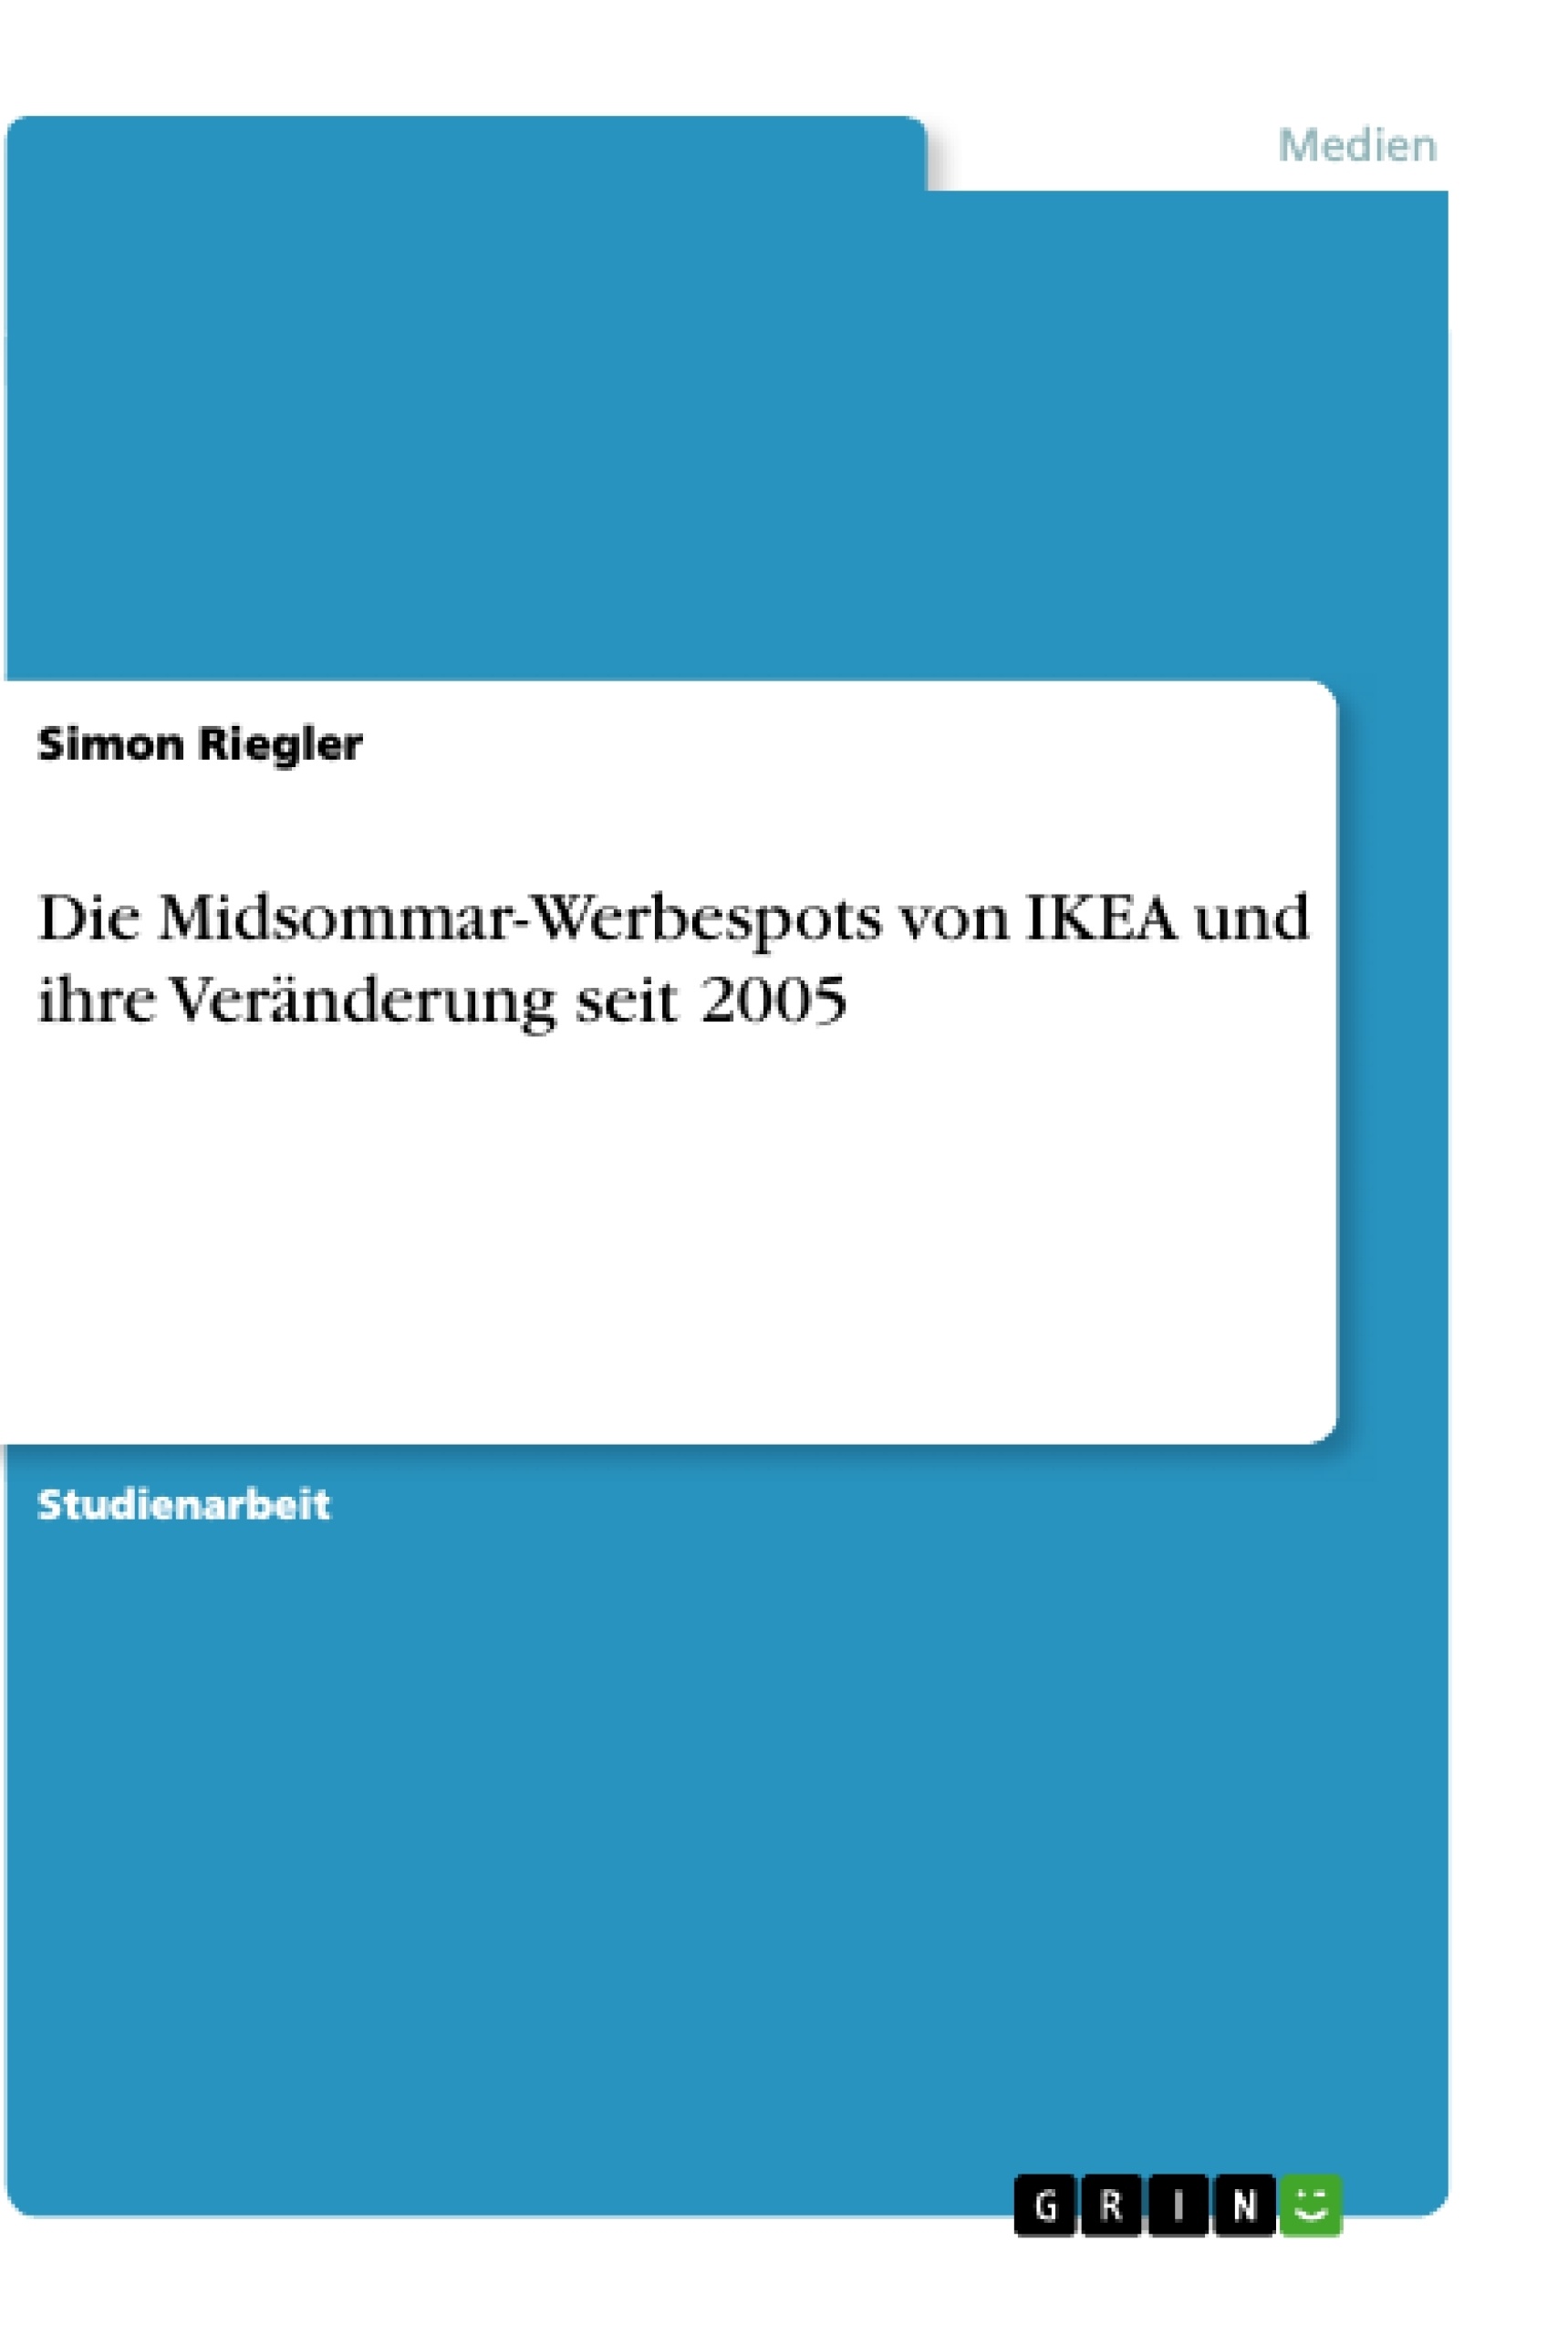 Title: Die Midsommar-Werbespots von IKEA und ihre Veränderung seit 2005